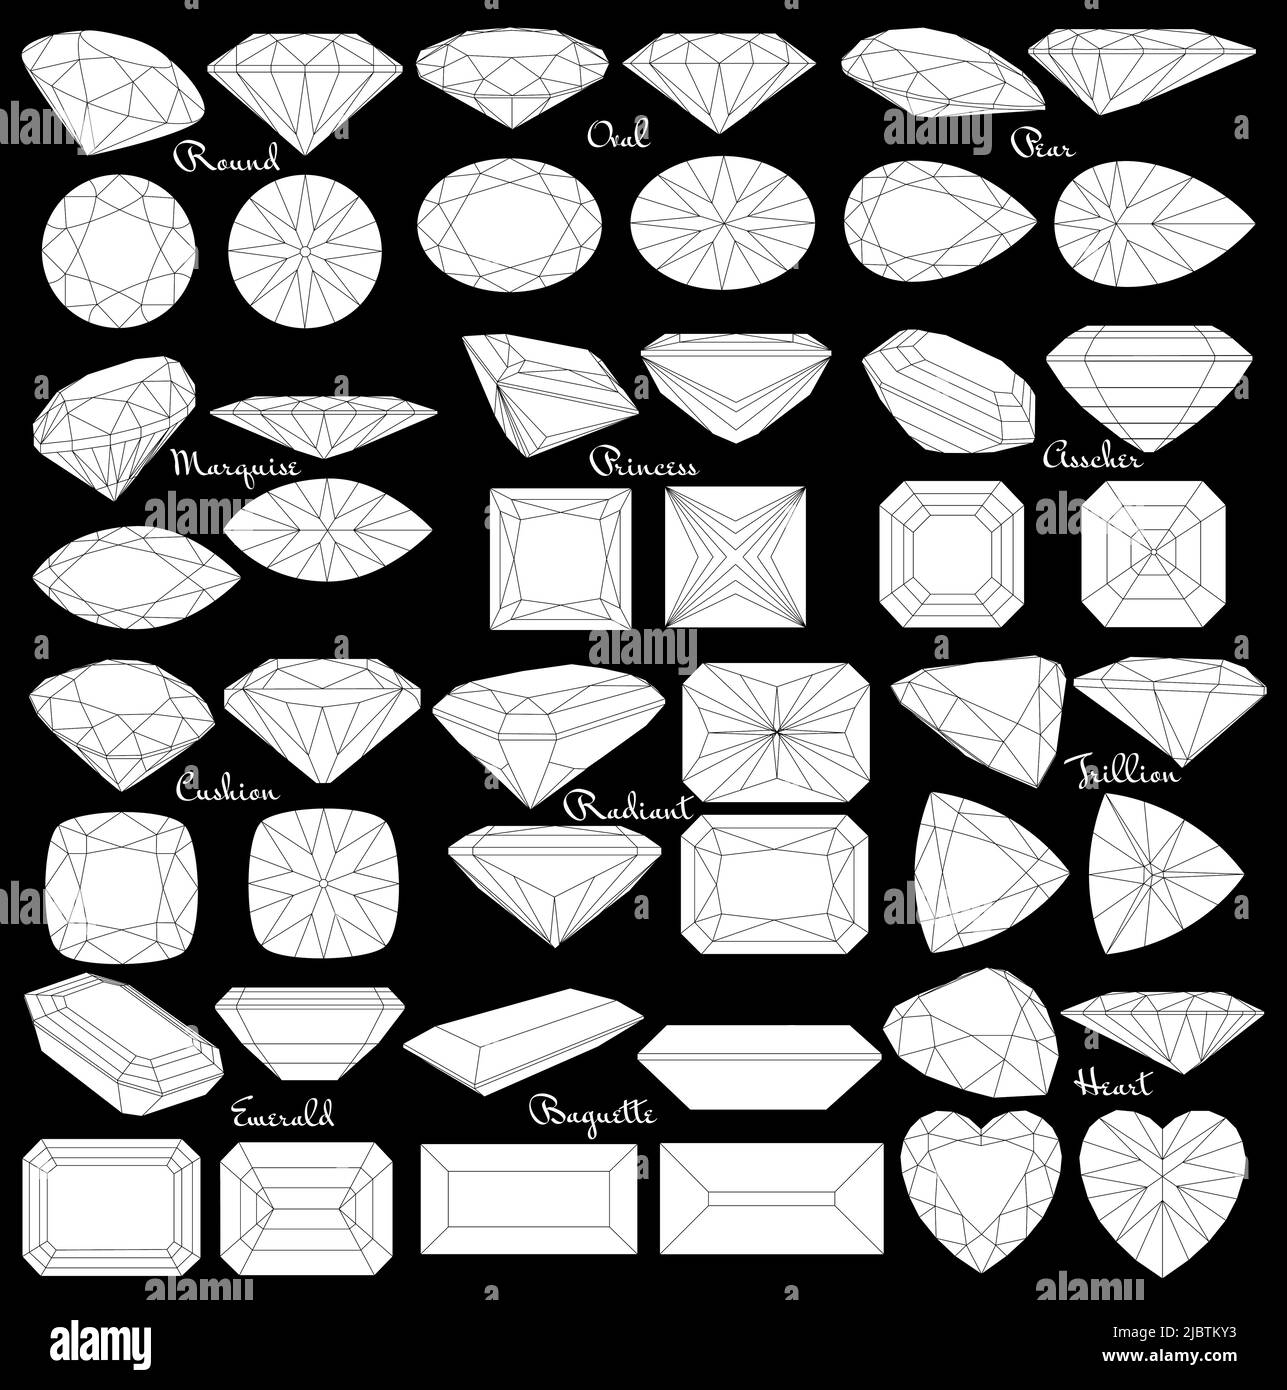 Schneiden von Edelsteinen. Arten von Diamantschliff. Vier Seiten von Schmuck mit Facetten für Hintergrund, Schnitzerei und Färbung. Stock Vektor